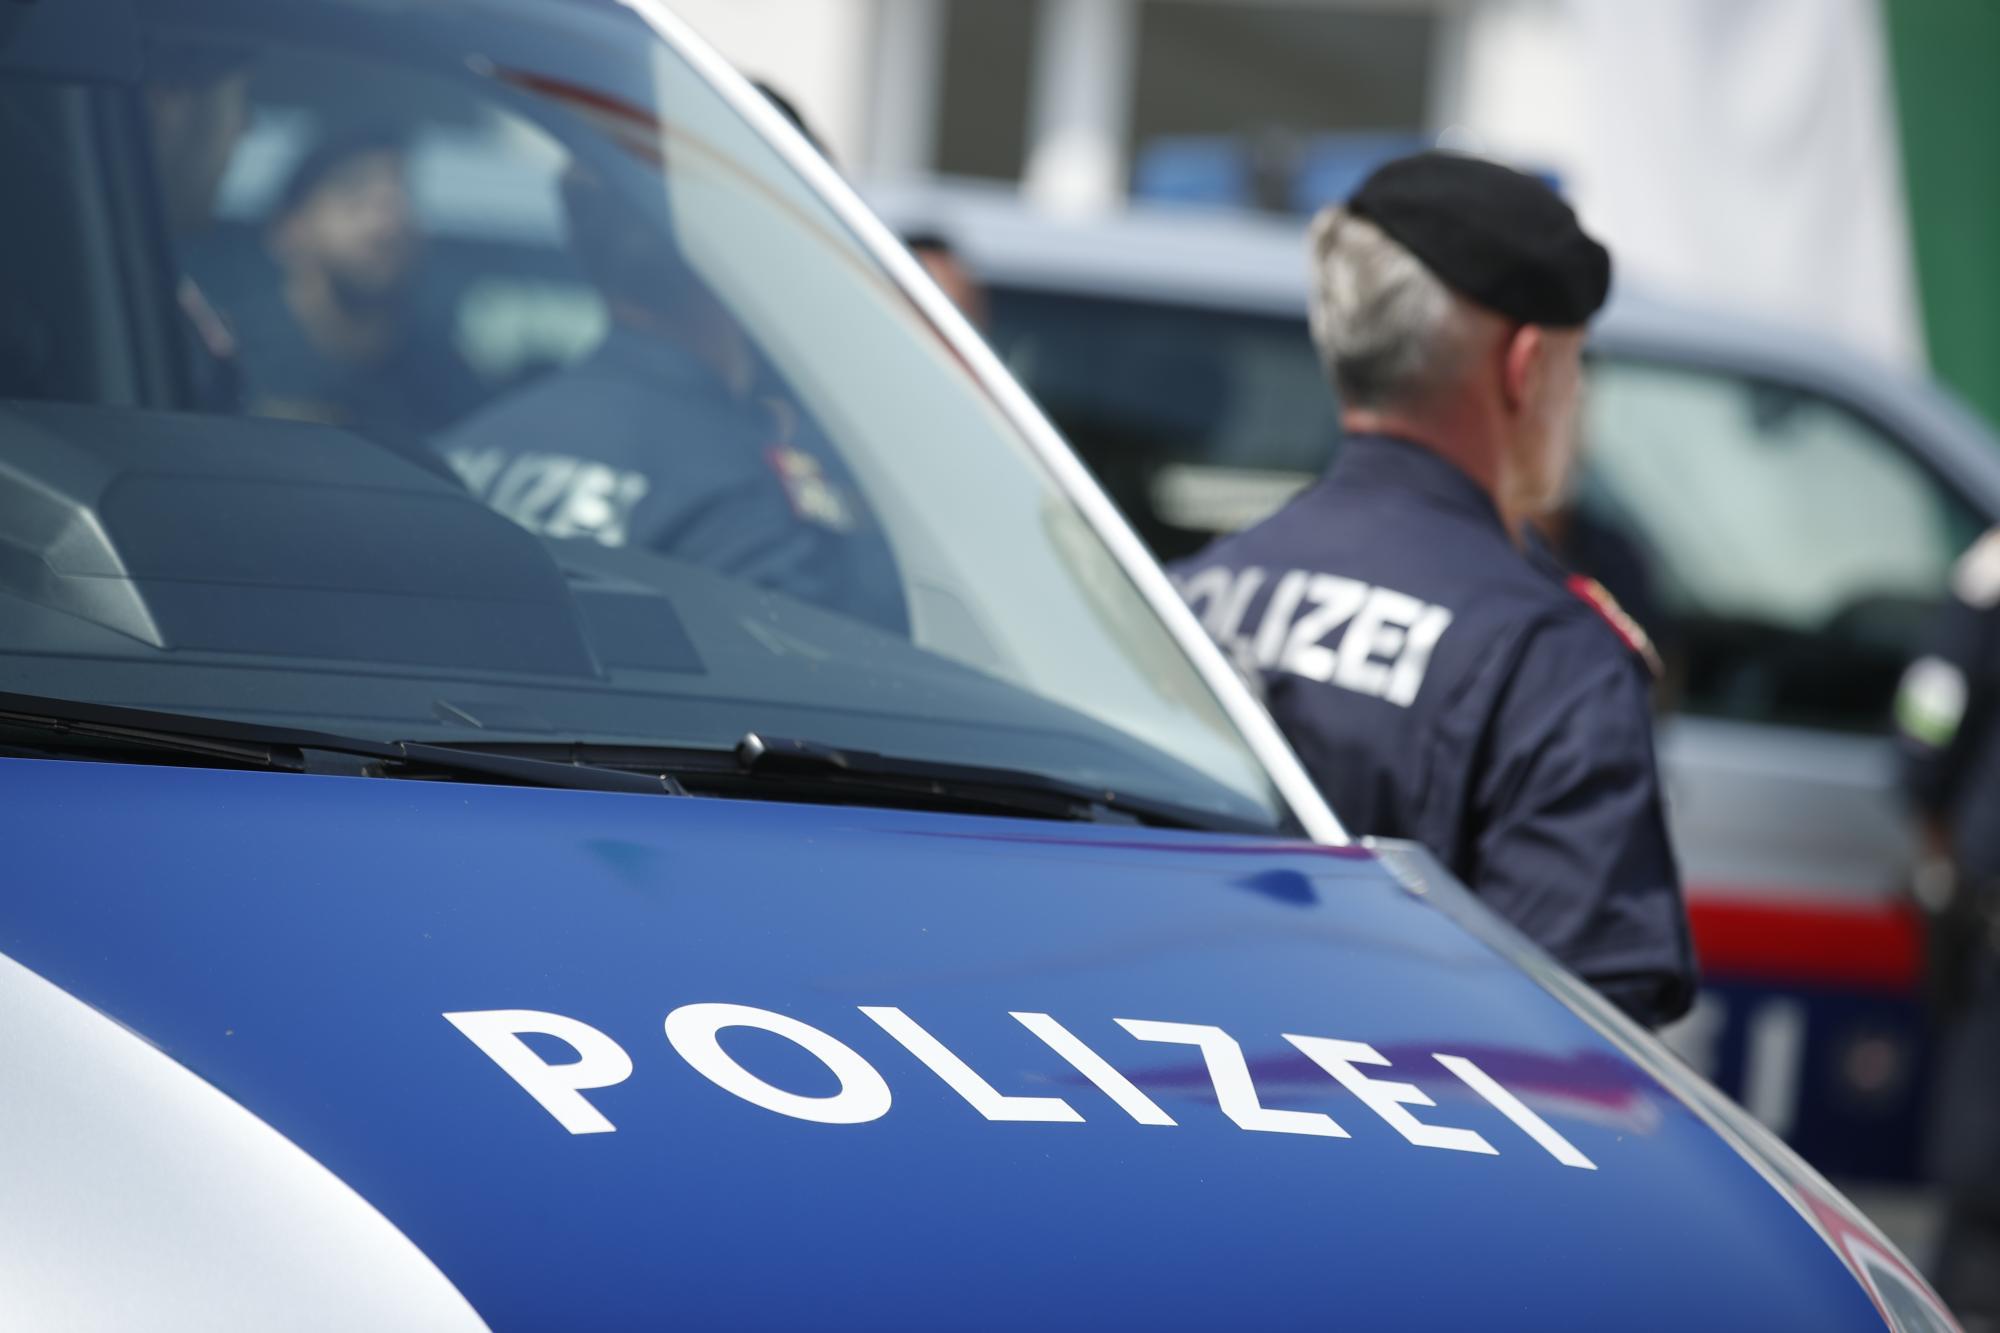 bauchstich vor lokal in linz: 34-jähriger wurde schwerst verletzt